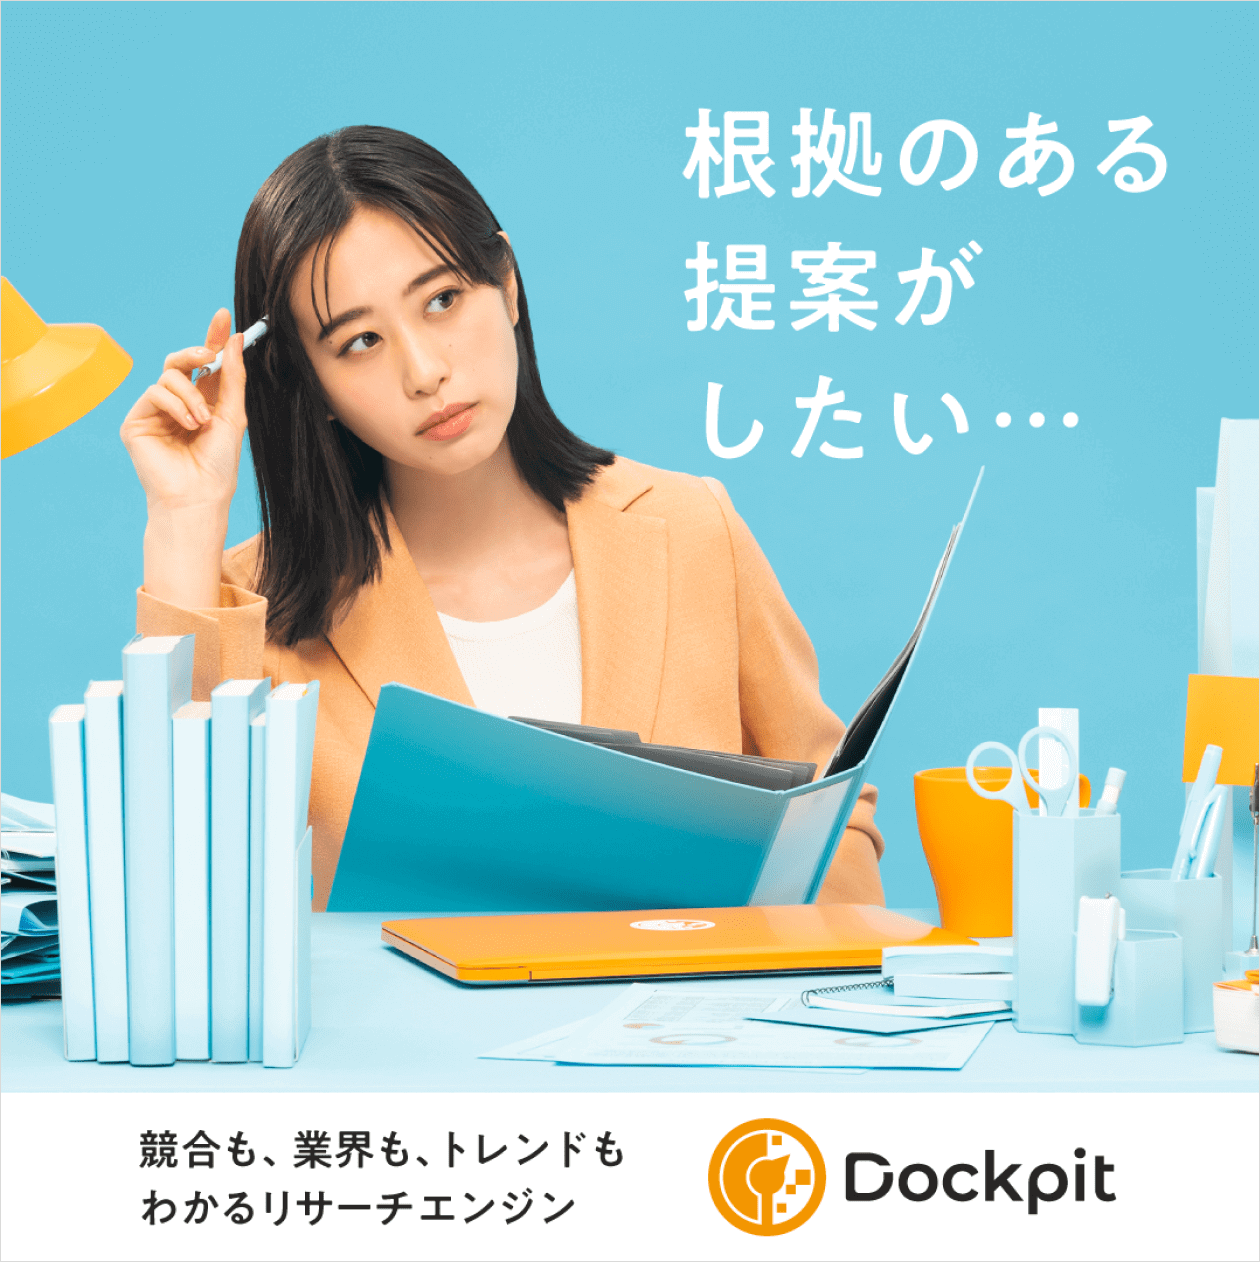 写真（7枚中6枚目）：Dockpitのバナー広告。「根拠のある提案がしたい…」というコピーとデスク前で悩むユーザーのイメージ。